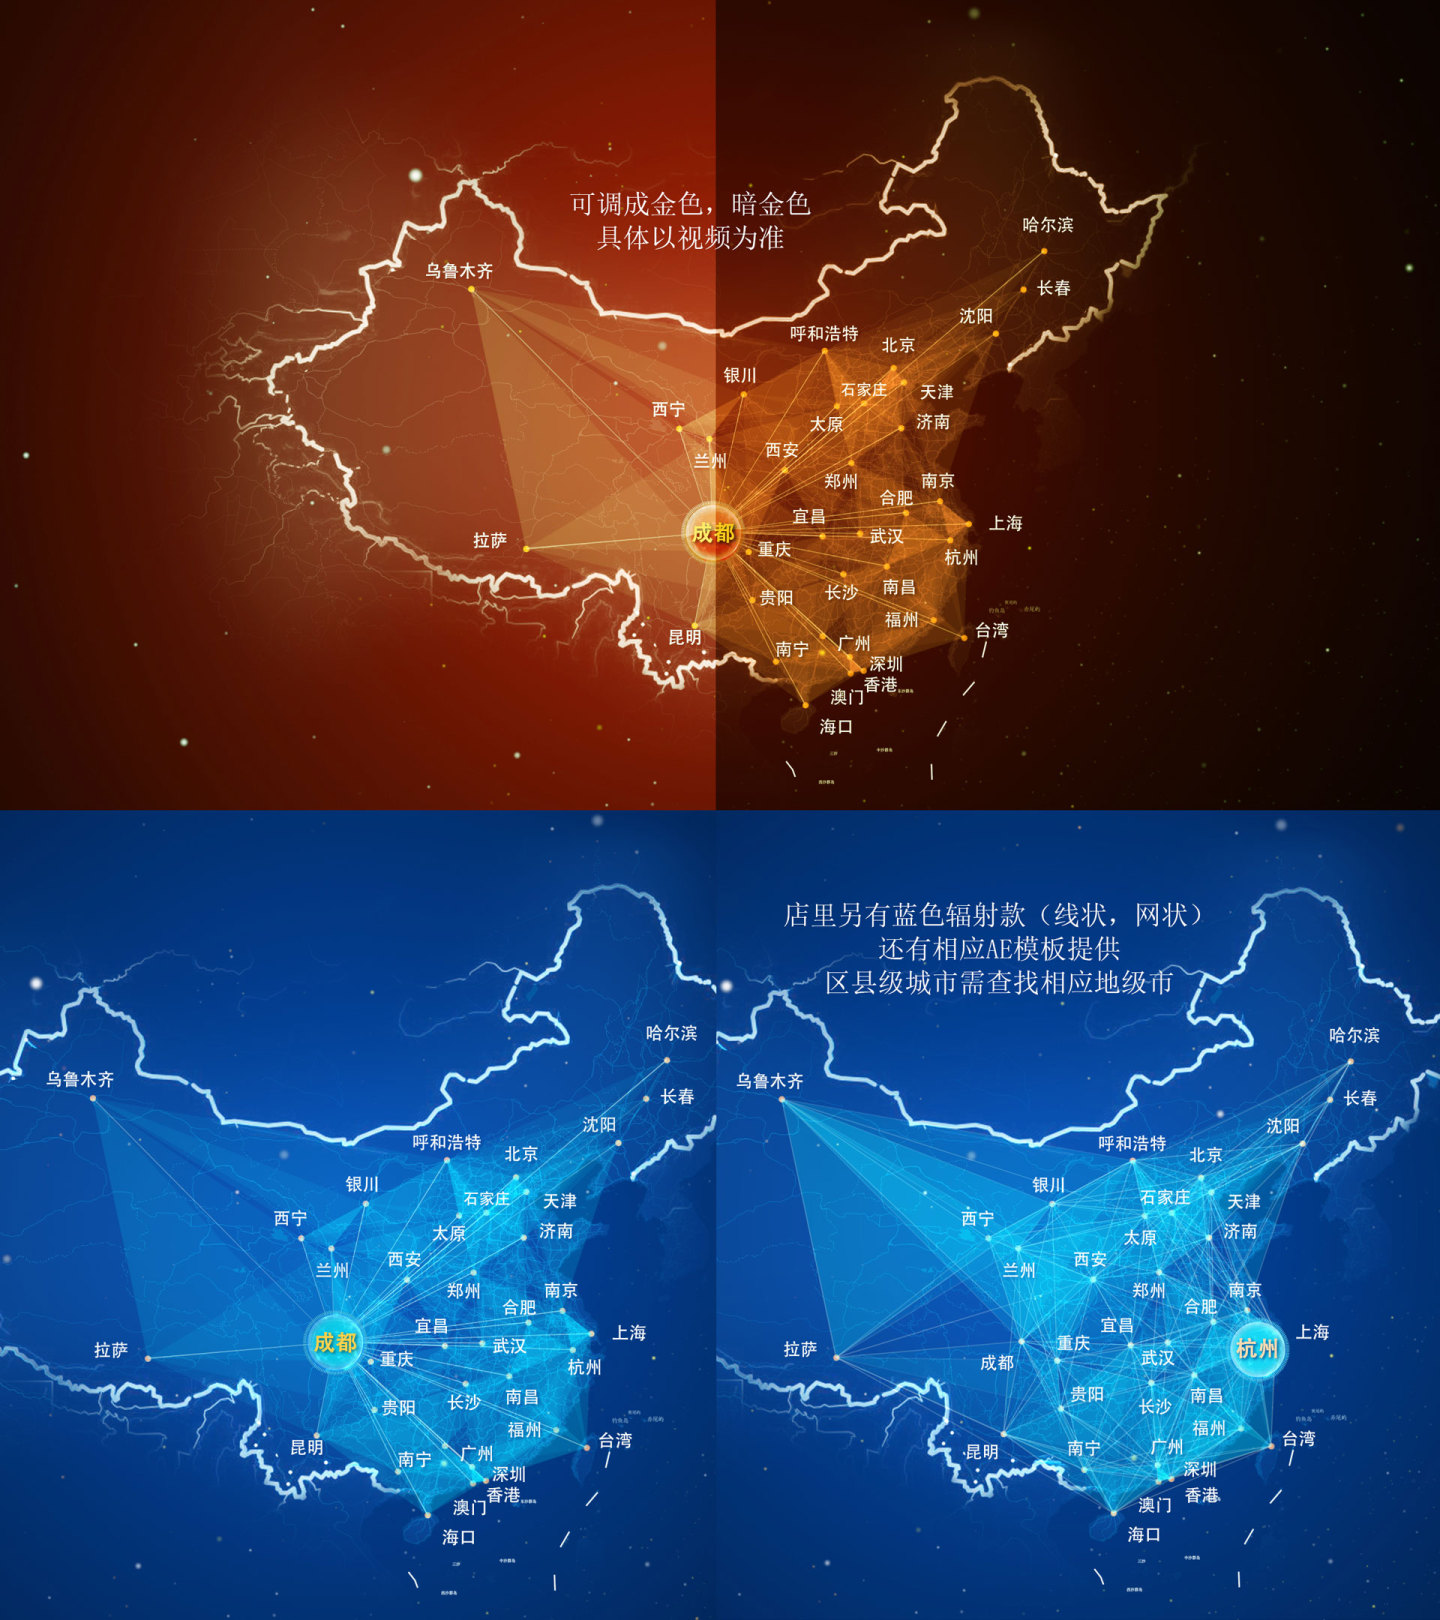 江苏 地图辐射 辐射世界 辐射中国